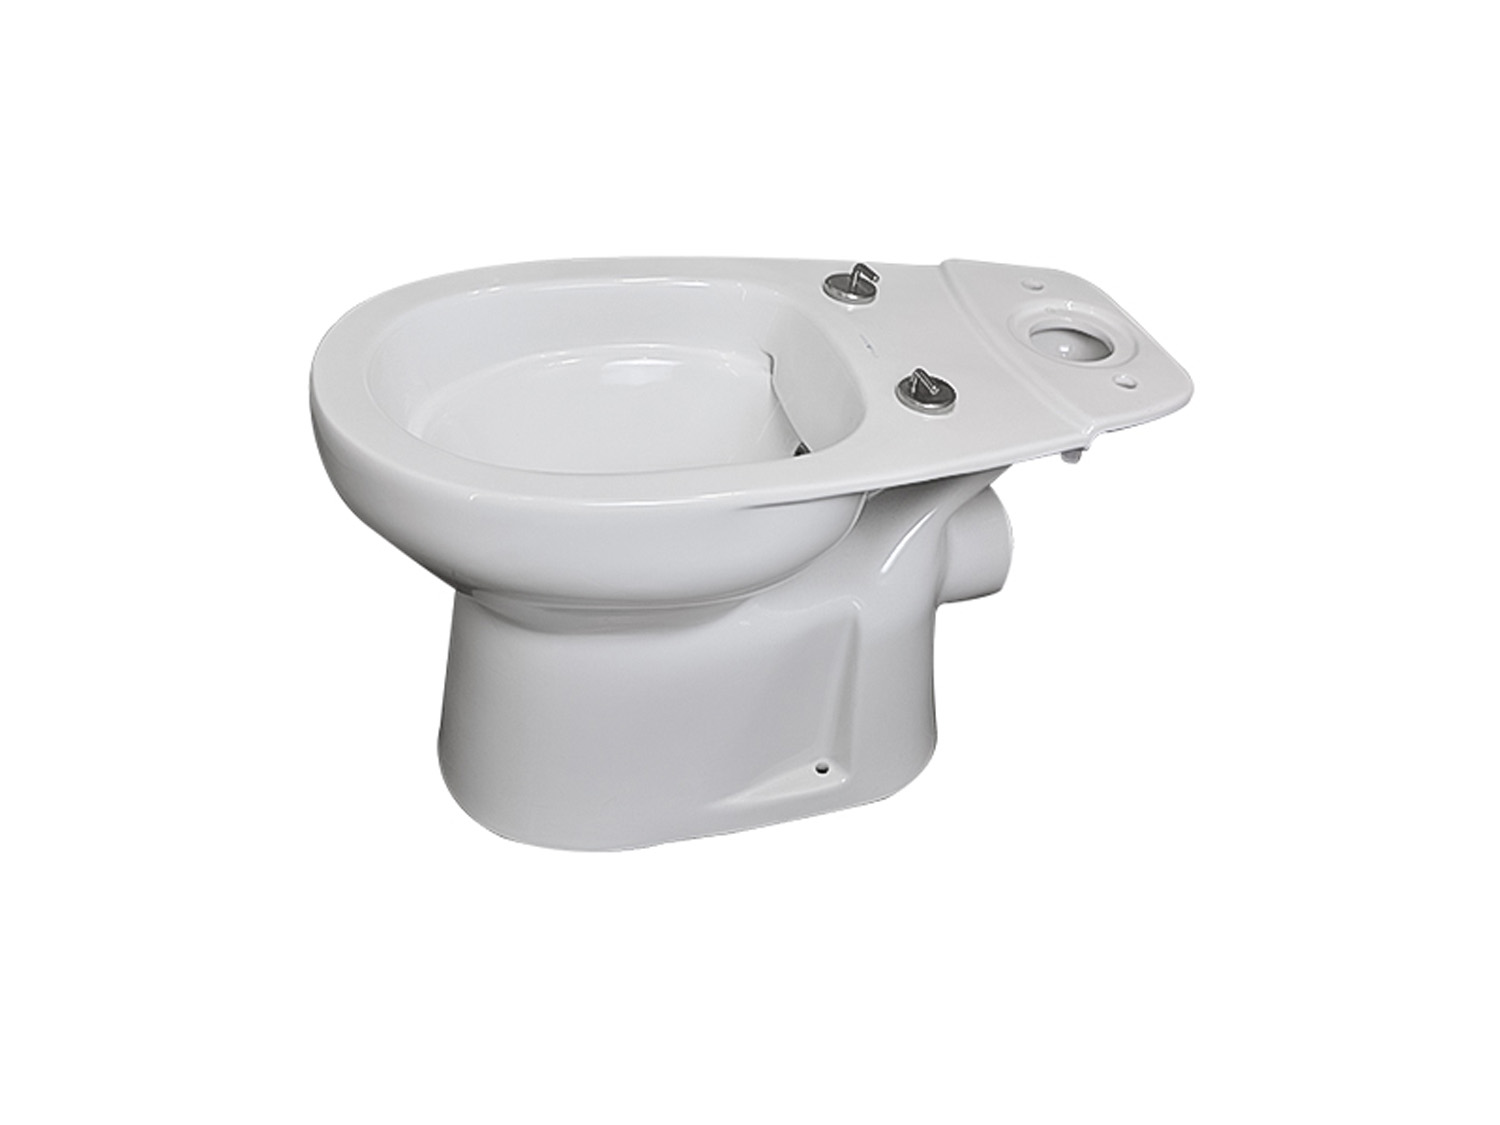 Delta White Dual Top Flush Toilet Suite